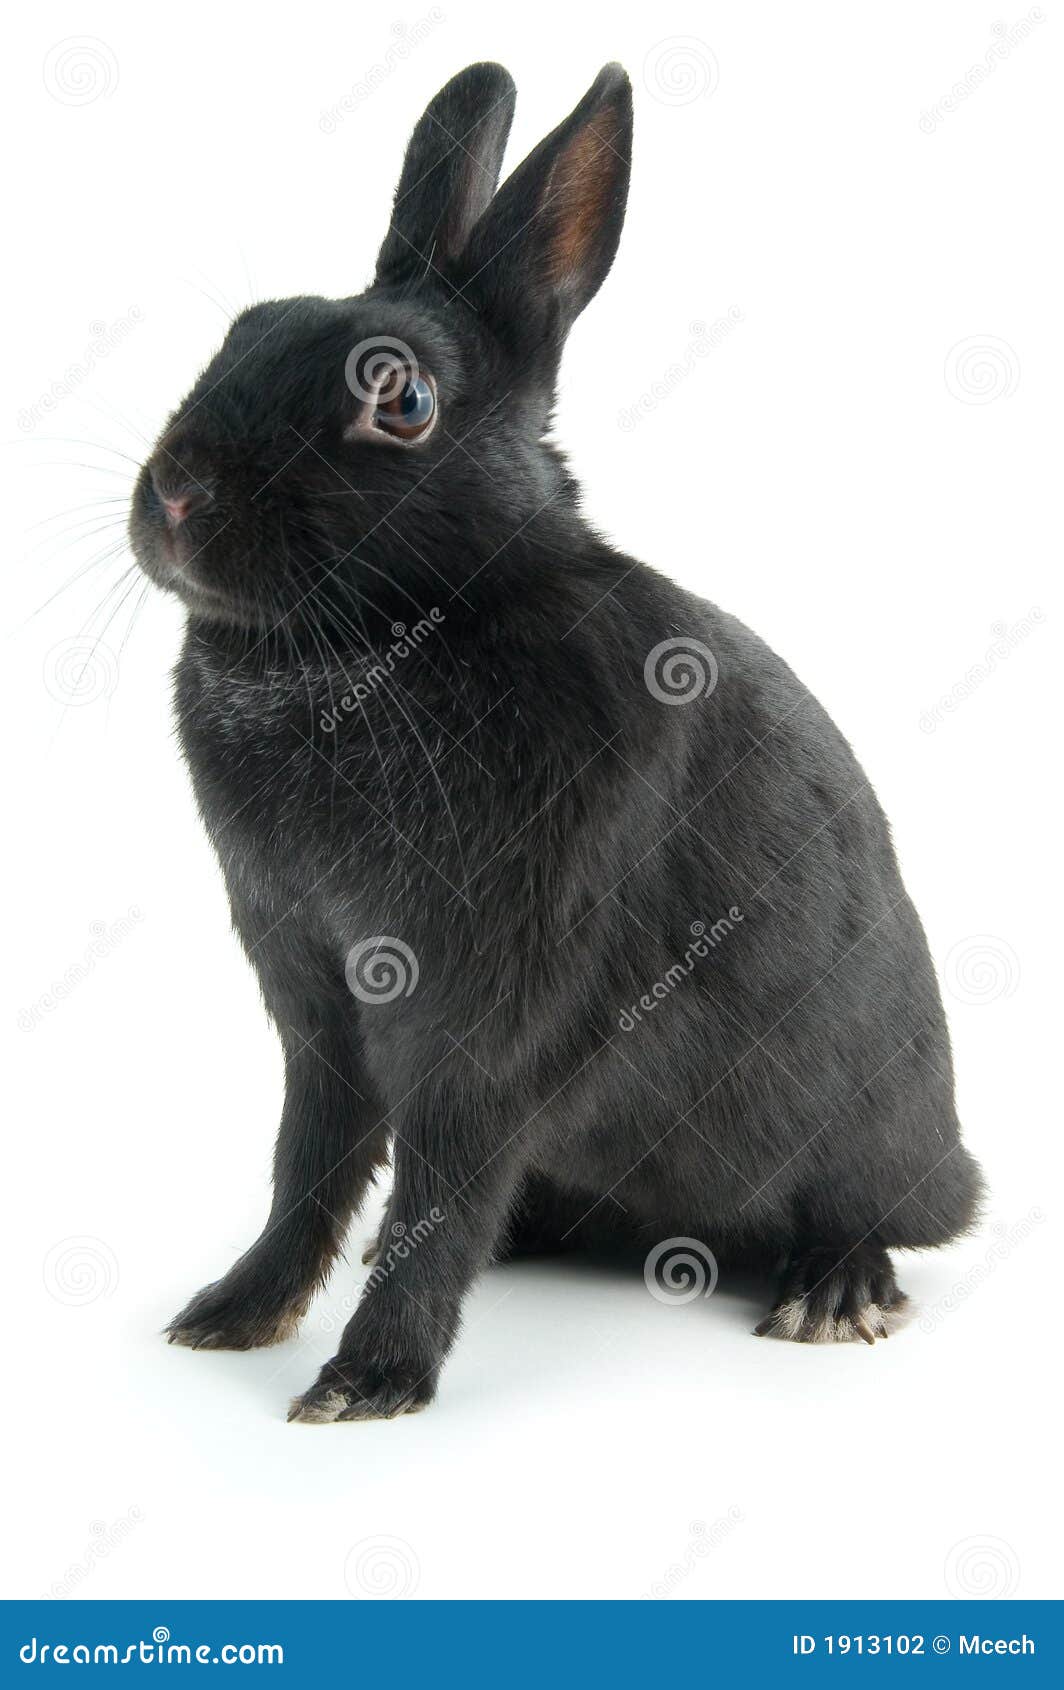 中华黑兔和莲山黑兔的区别 如何区分中华黑兔和莲山黑兔_小可爱宠物网